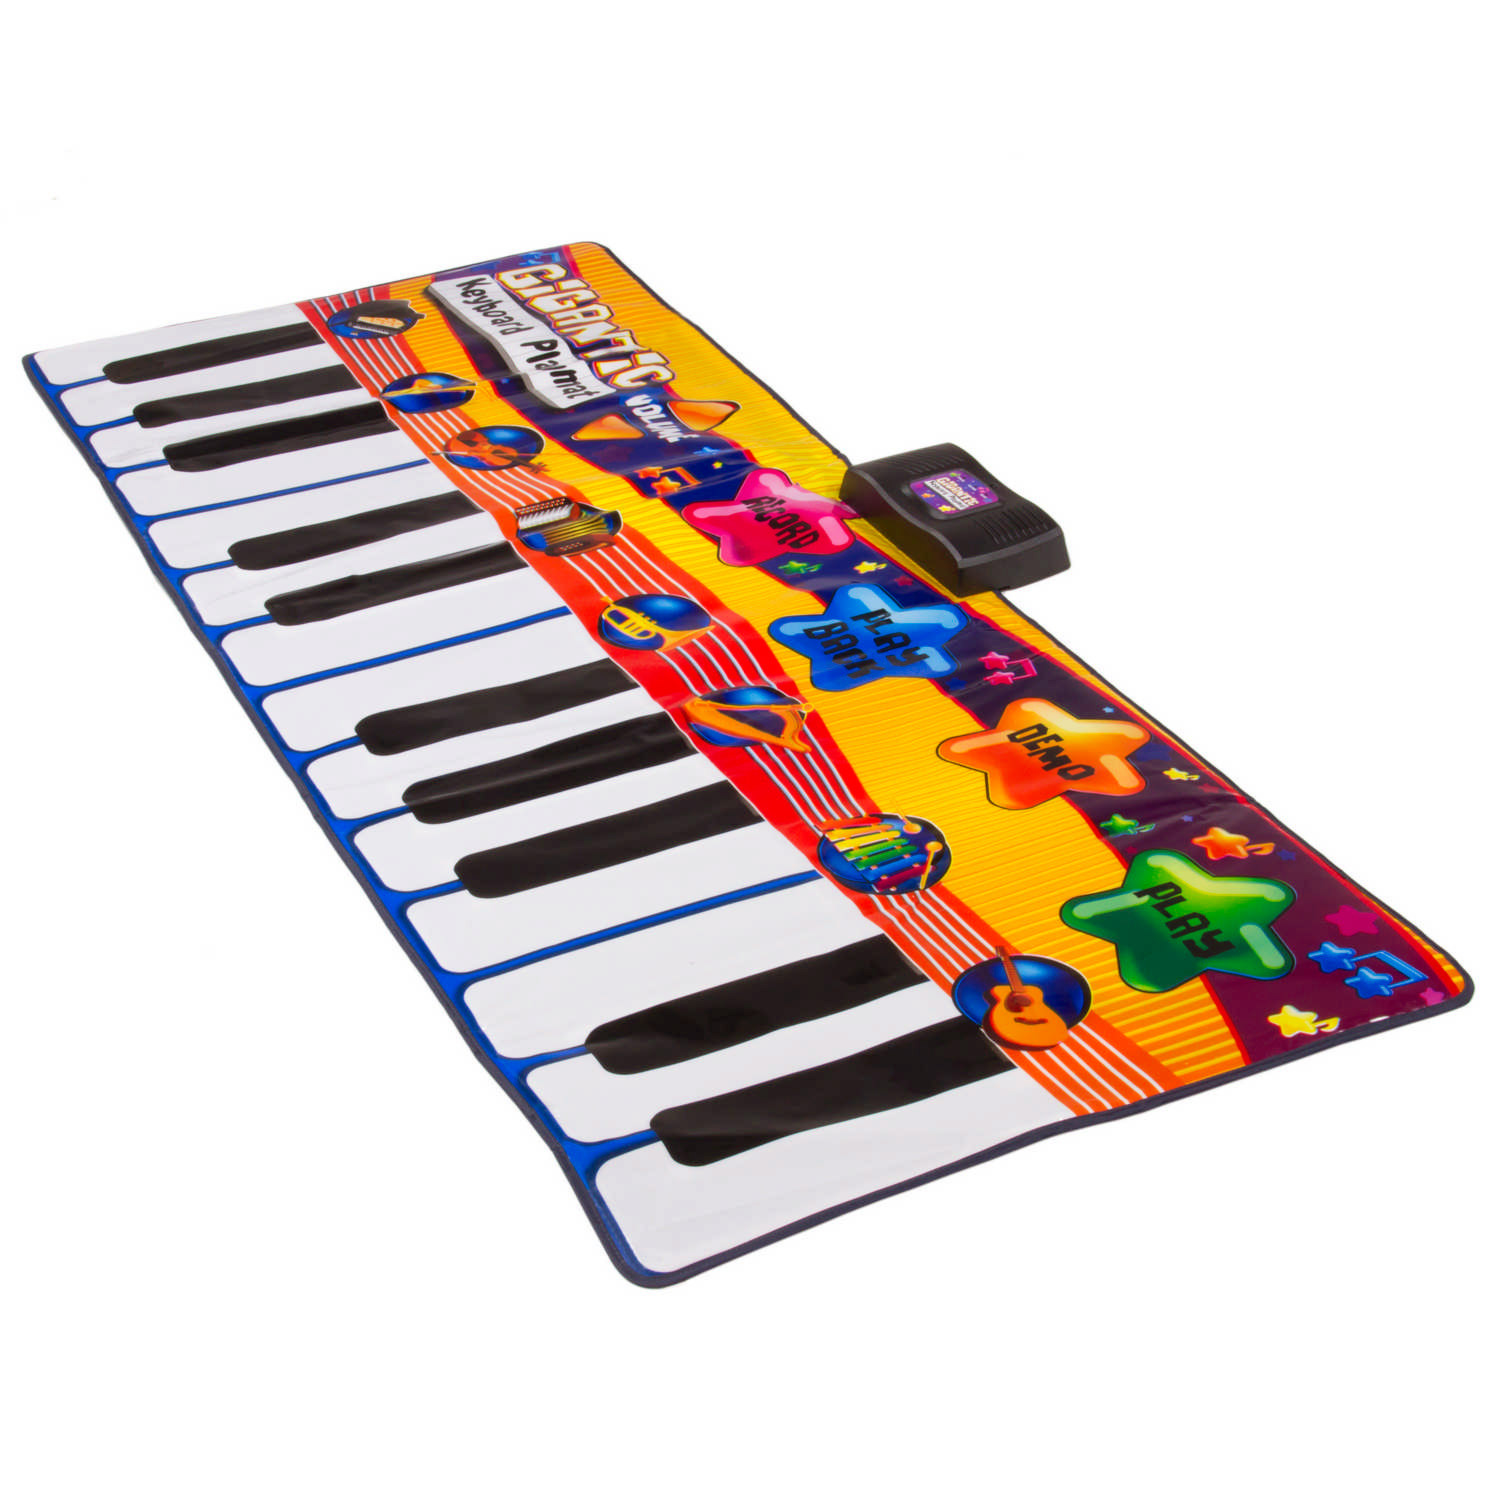 Gigantic Keyboard Musical Playmat Image